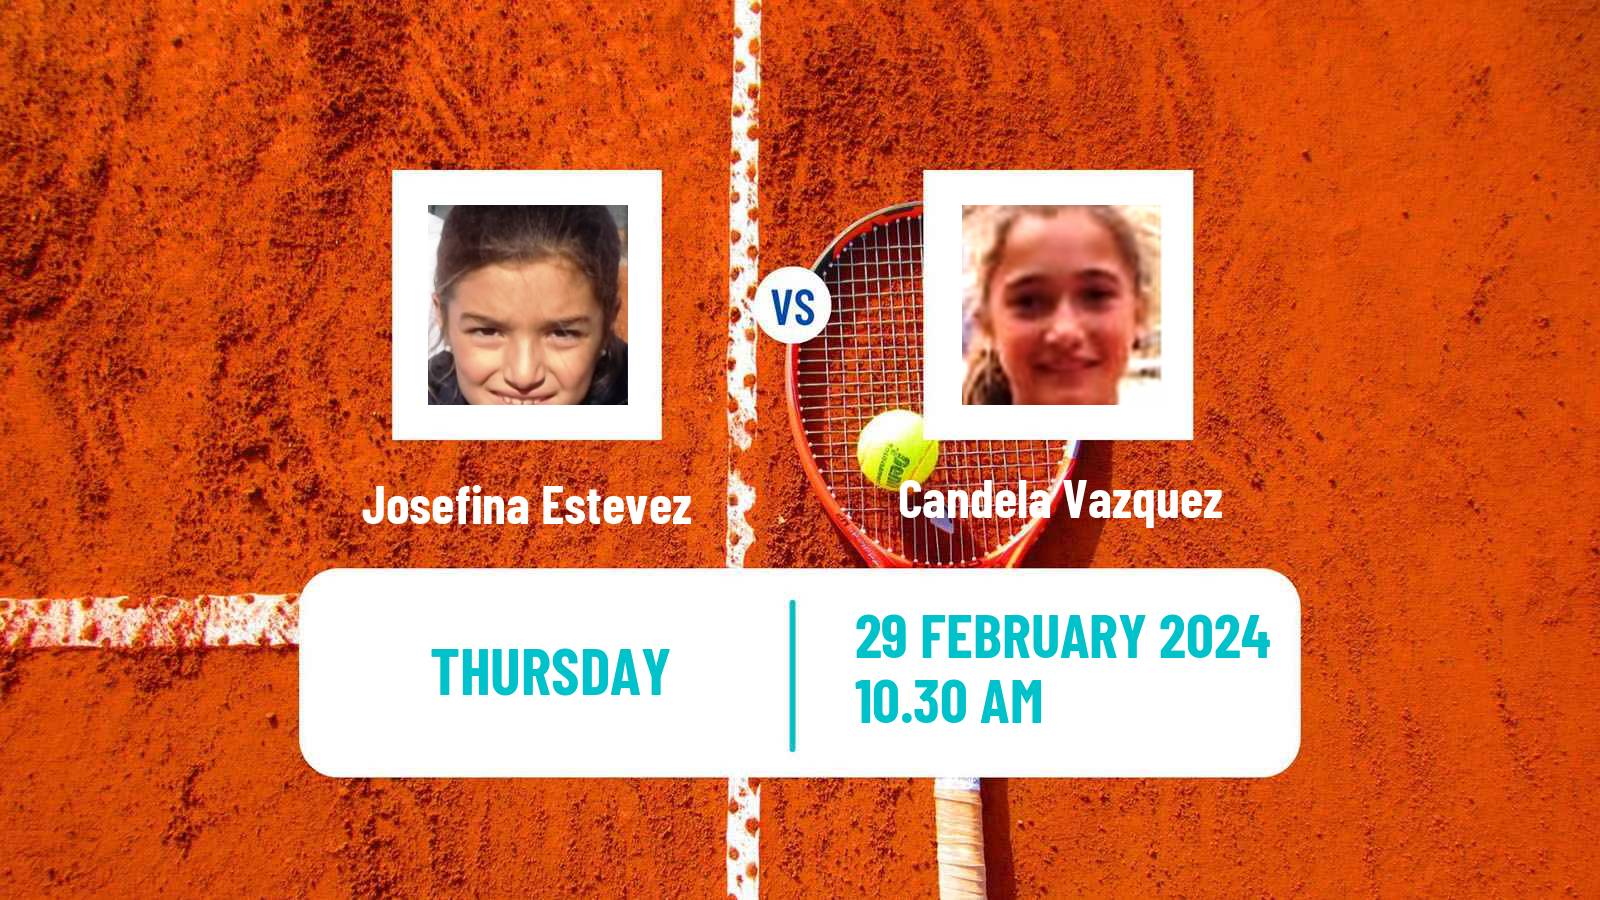 Tennis ITF W15 Tucuman Women Josefina Estevez - Candela Vazquez